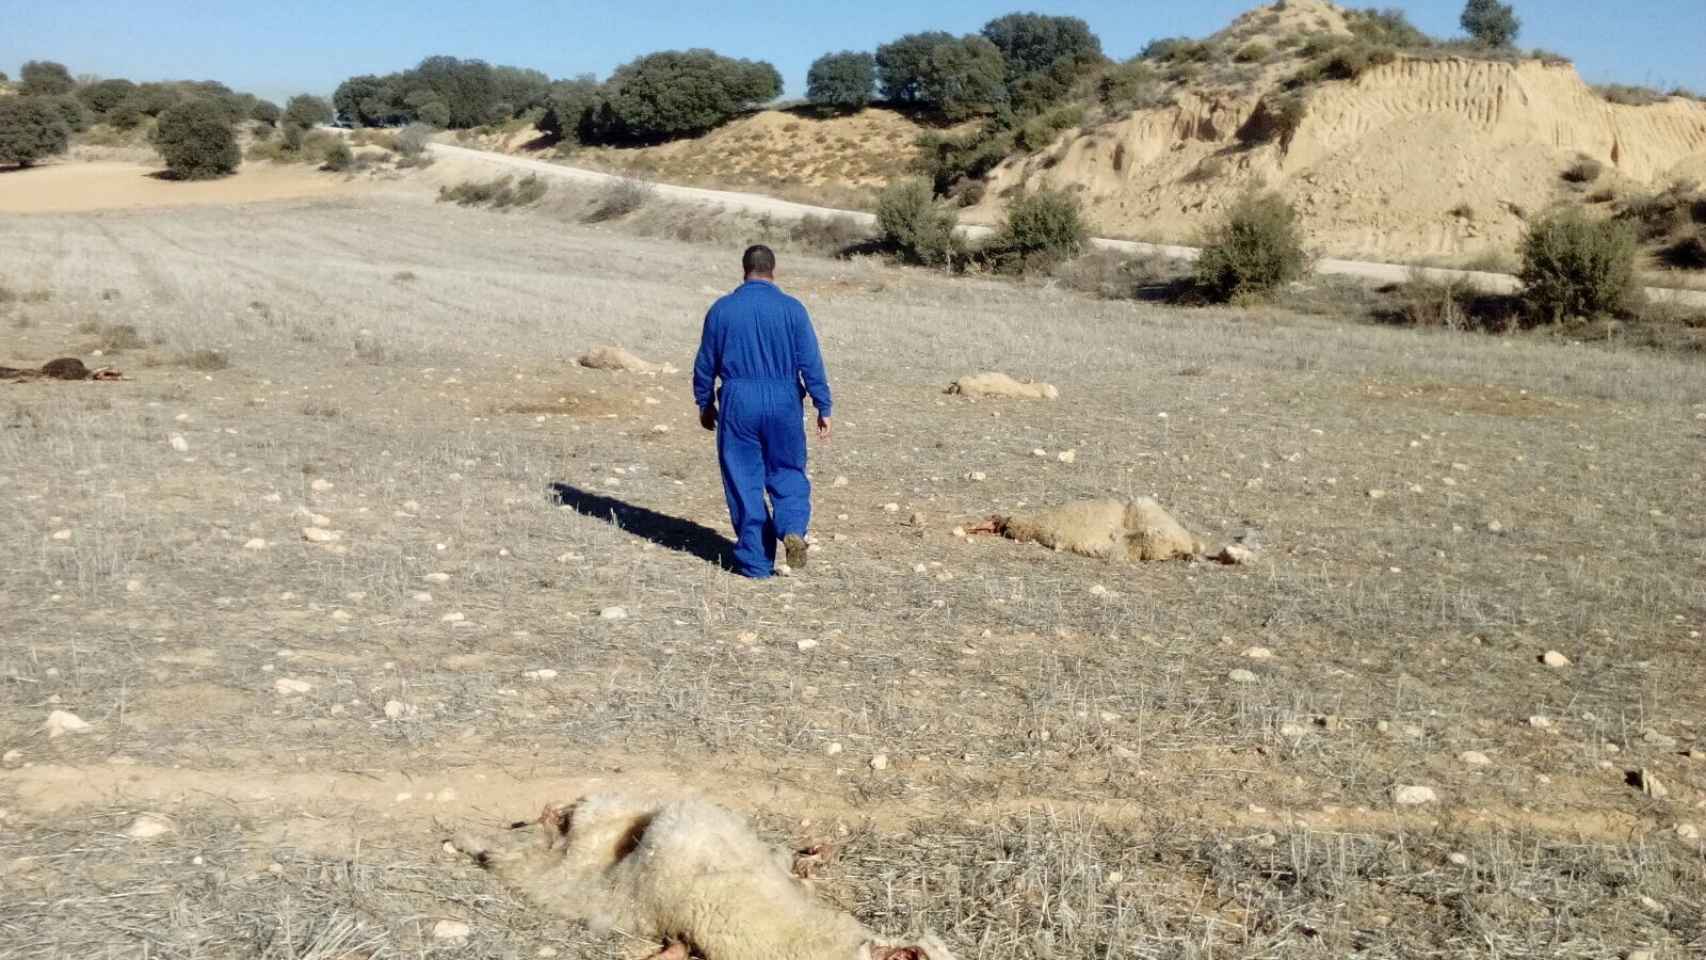 Maatouf pasea entre los cadáveres de sus ovejas.